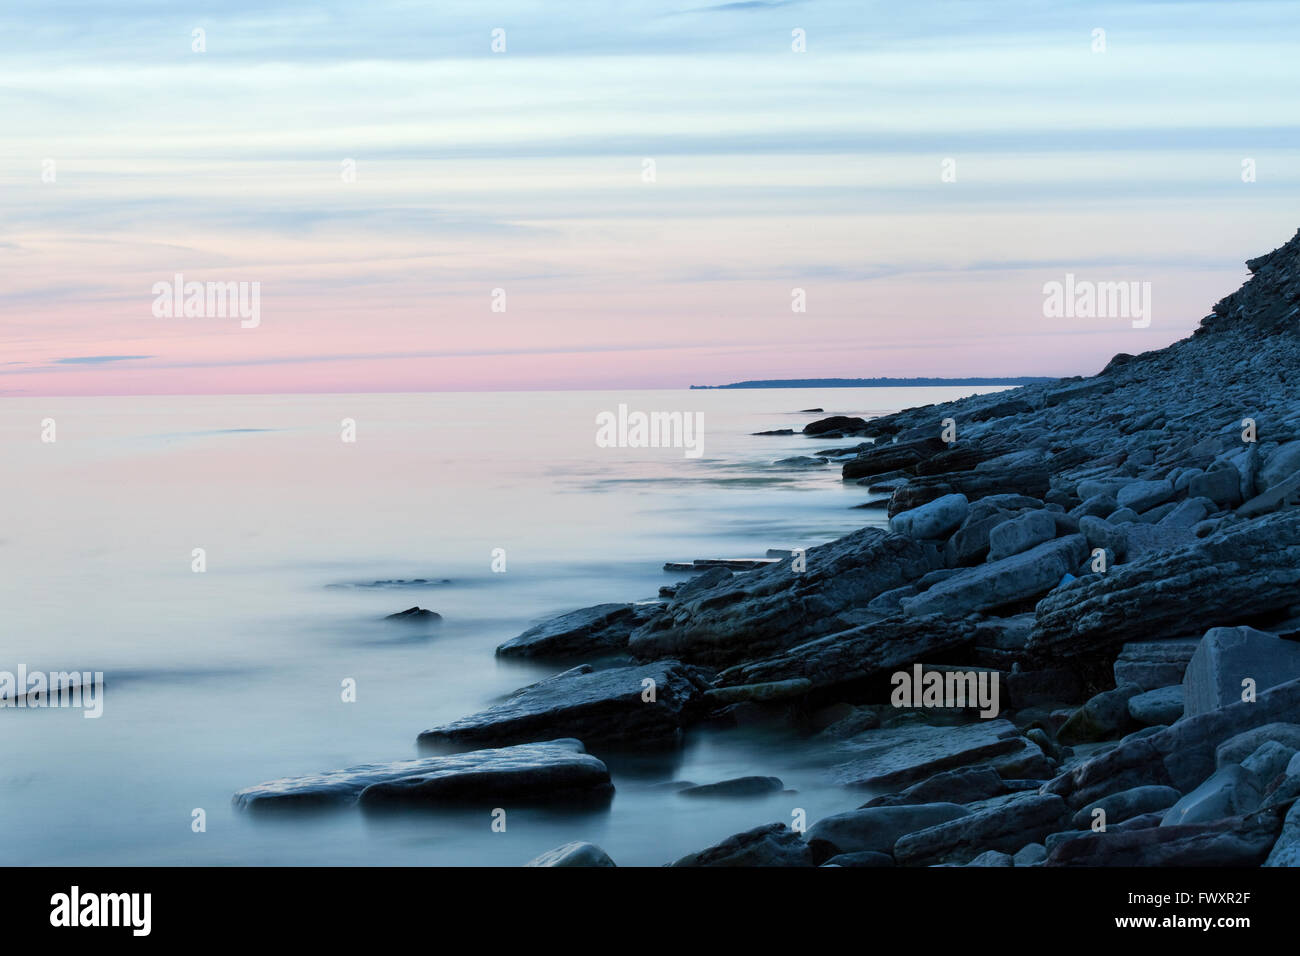 Schweden, Öland, Sandvik, Seelandschaft mit pastellfarbenen sunset sky Stockfoto